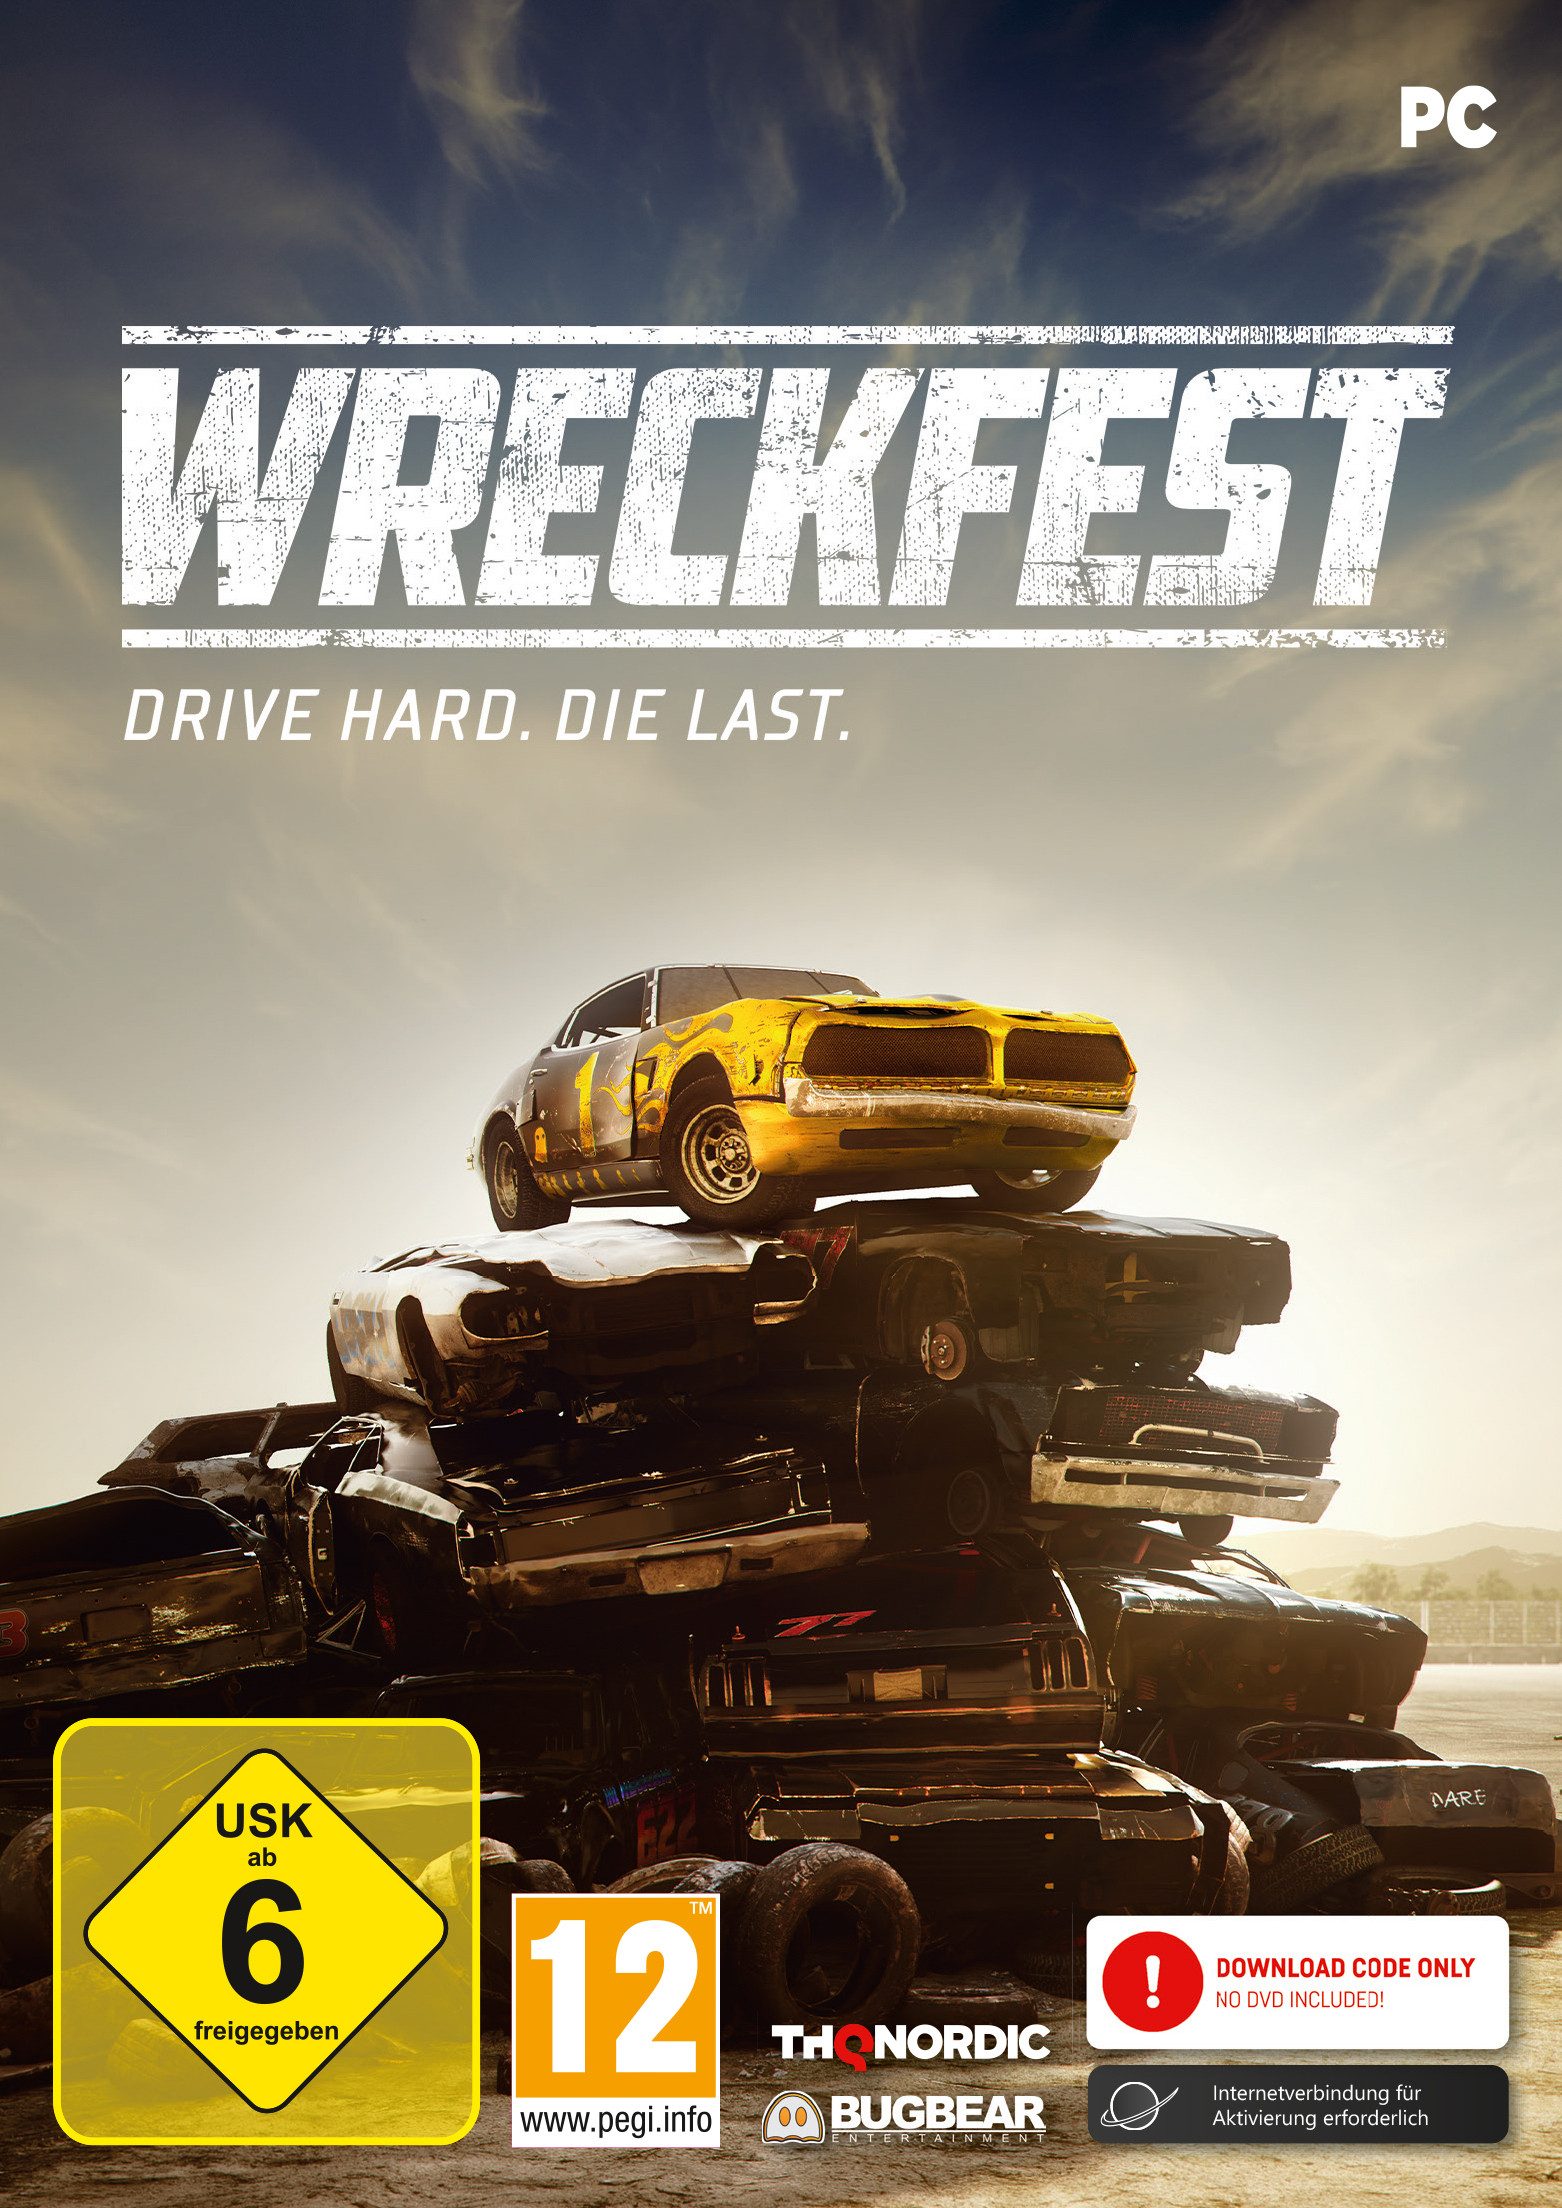 Wreckfest PC